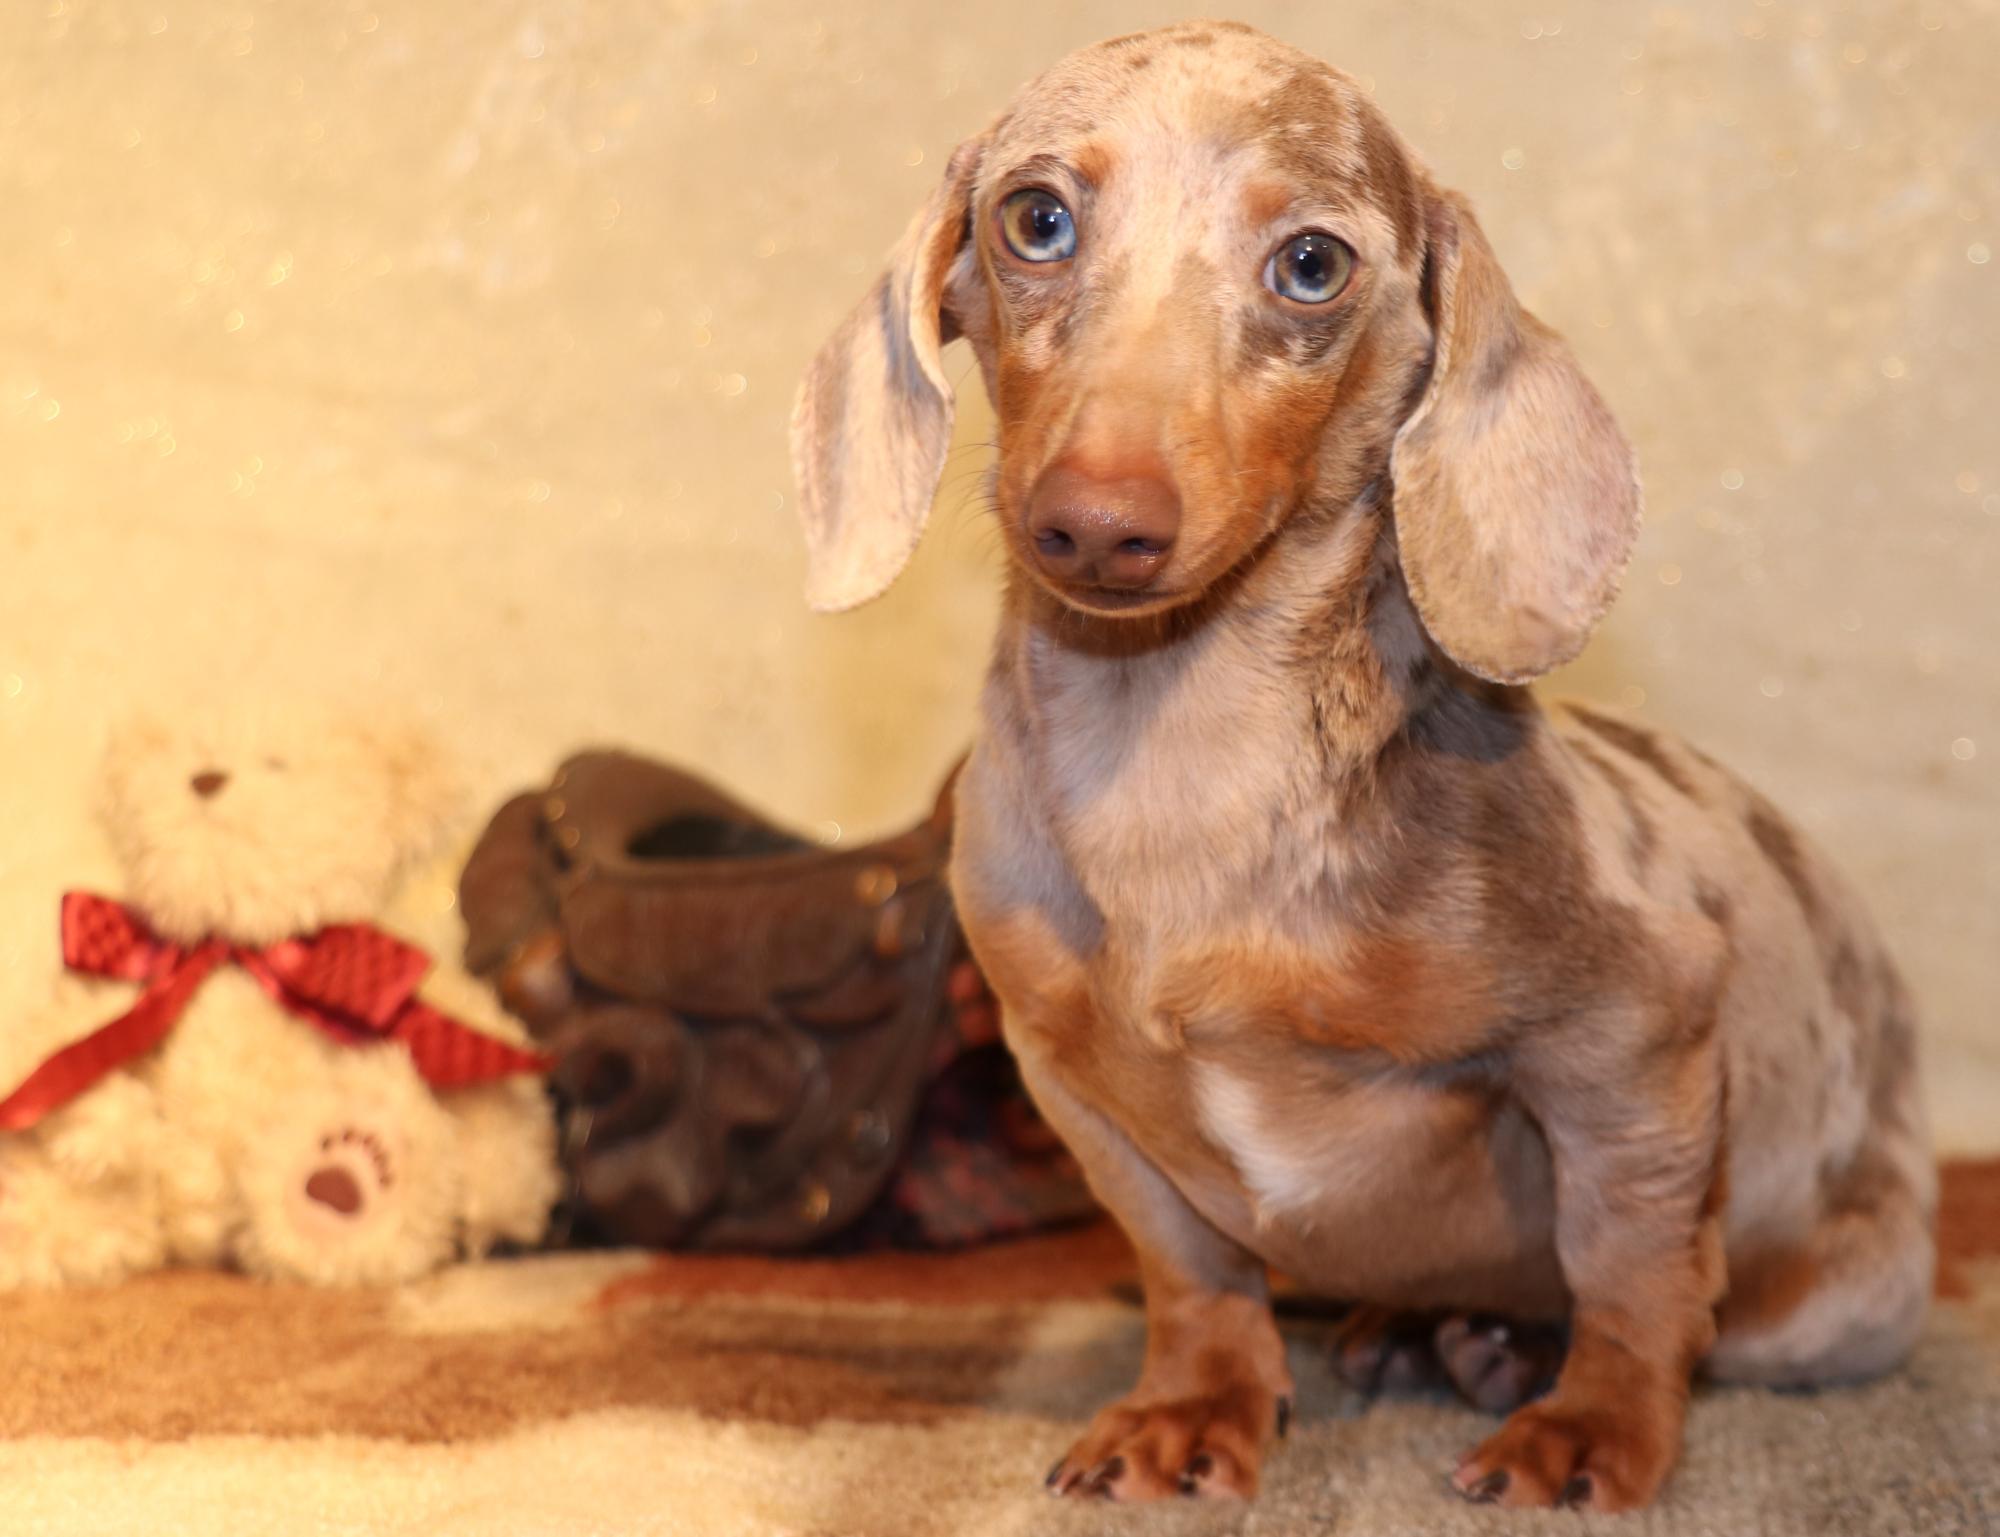 isabella piebald dachshund puppies sale